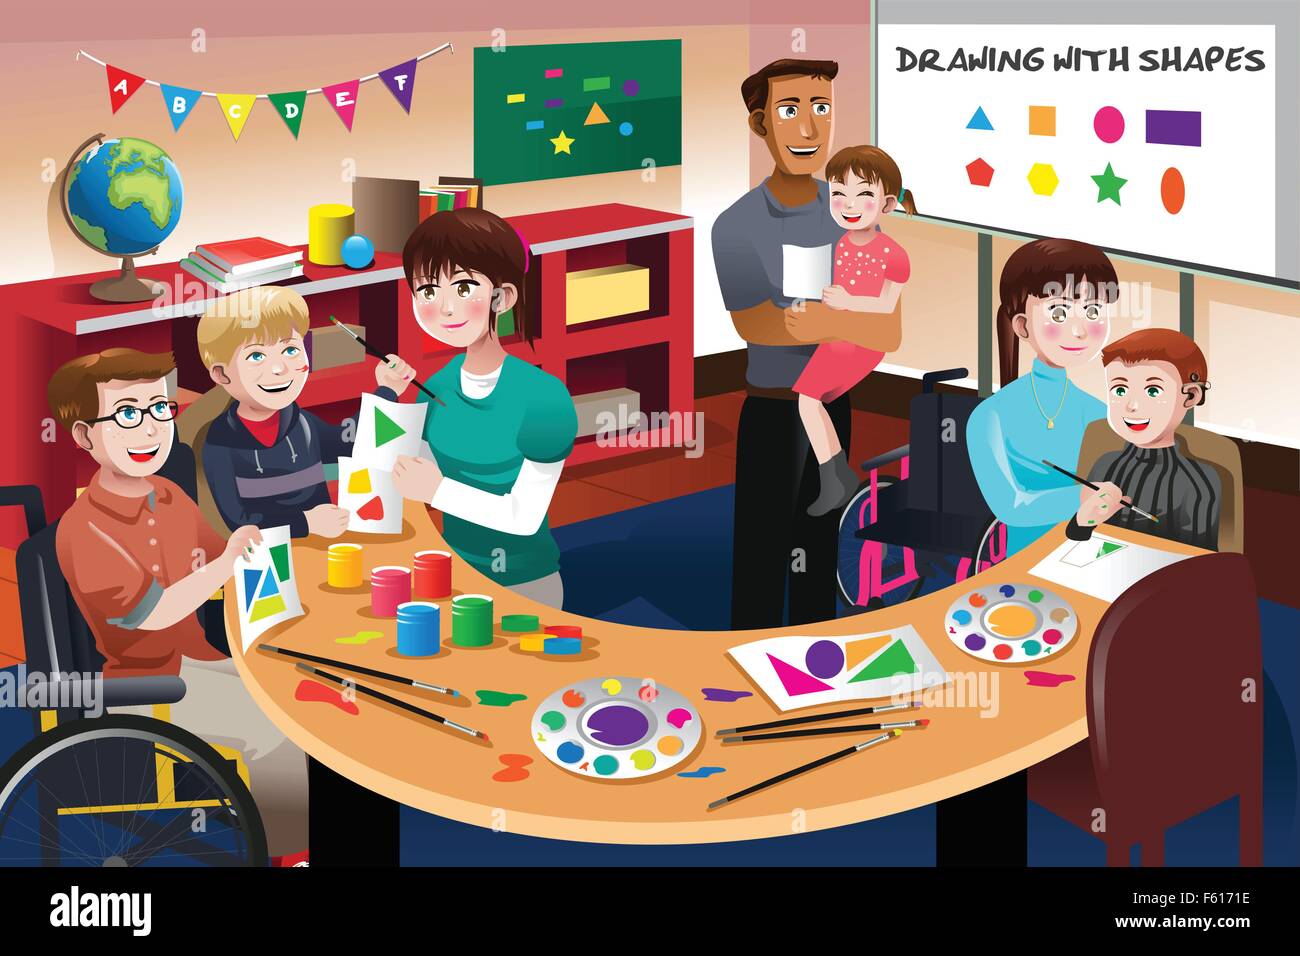 Un vecteur illustration d'élèves handicapés dans une classe Illustration de Vecteur